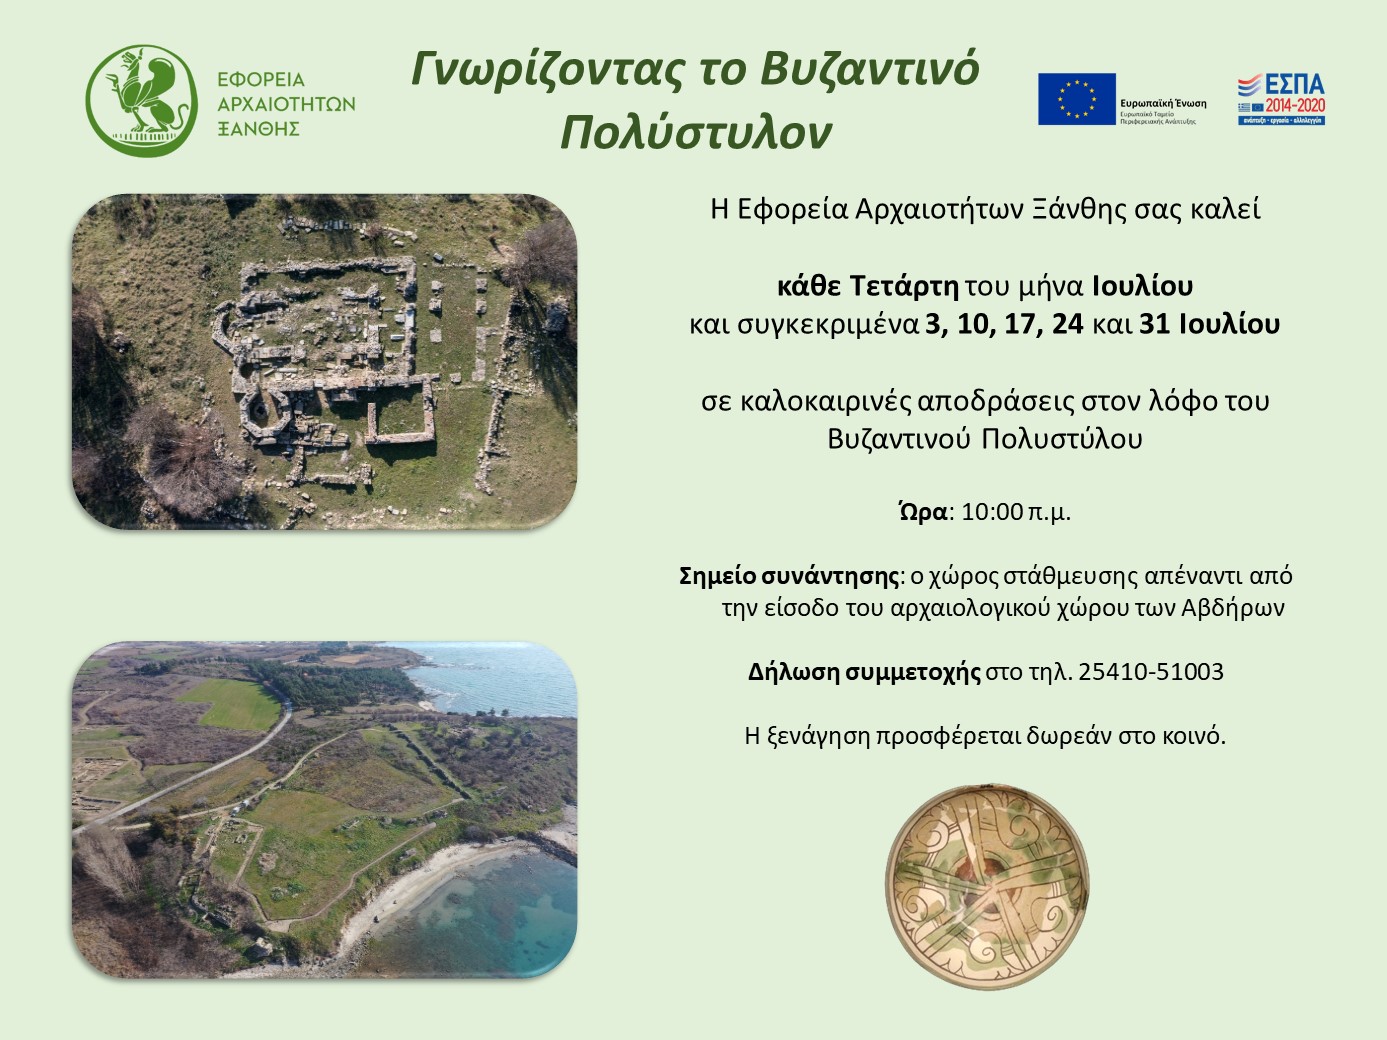 Εφορεία Αρχαιοτήτων Ξάνθης: “Γνωρίζοντας το Βυζαντινό Πολύστυλον” στα Άβδηρα- Περιηγήσεις & ξεναγήσεις όλο τον Ιούλιο